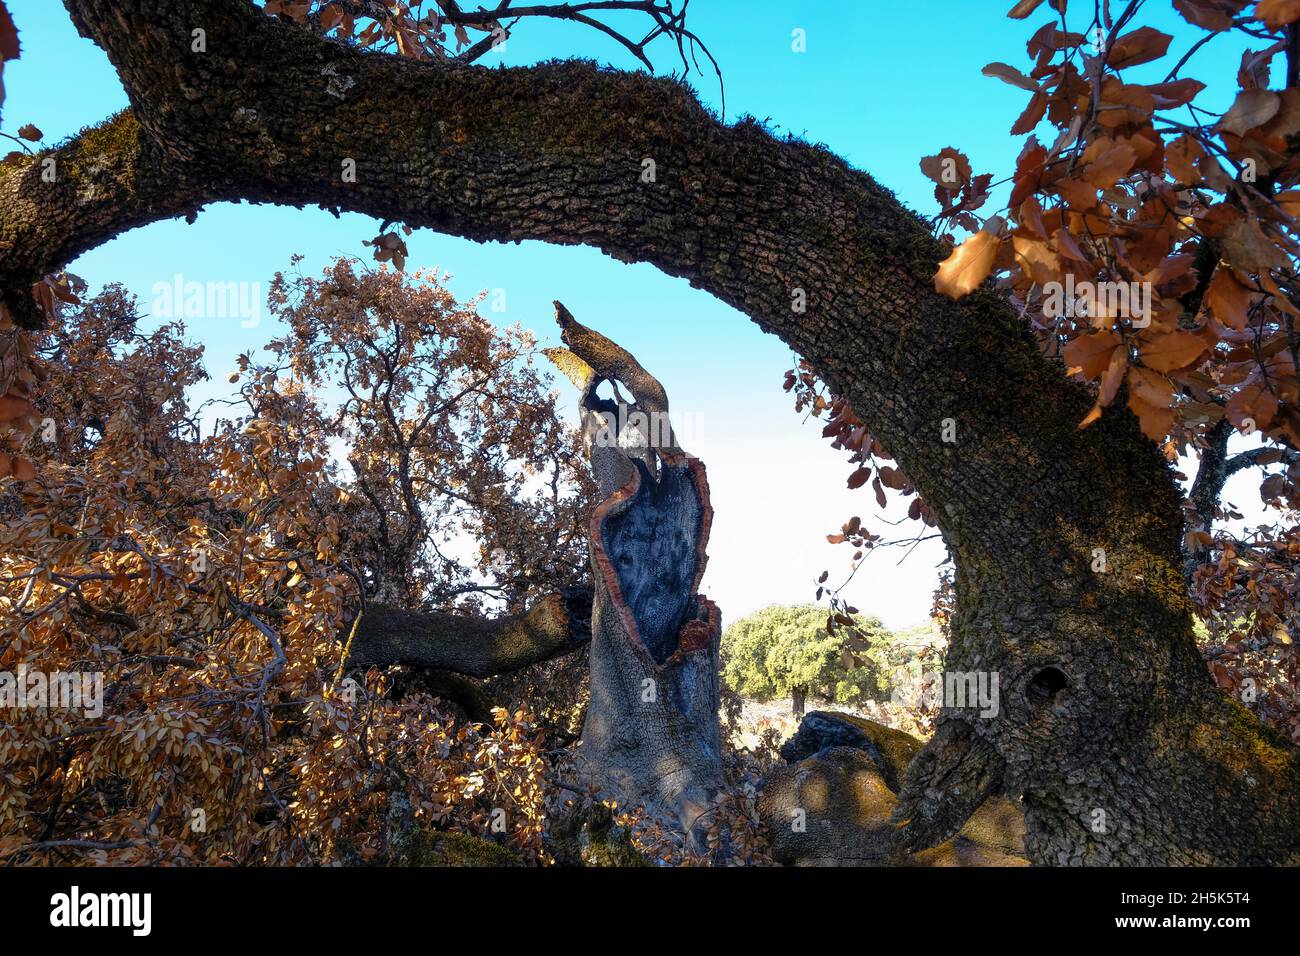 Vestiges d'un ancien chêne de Holm détruit dans un feu de forêt d'été.Algar, Parc naturel de Sierras Subbeticas, province de Cordoue, Andalousie, Espagne Banque D'Images